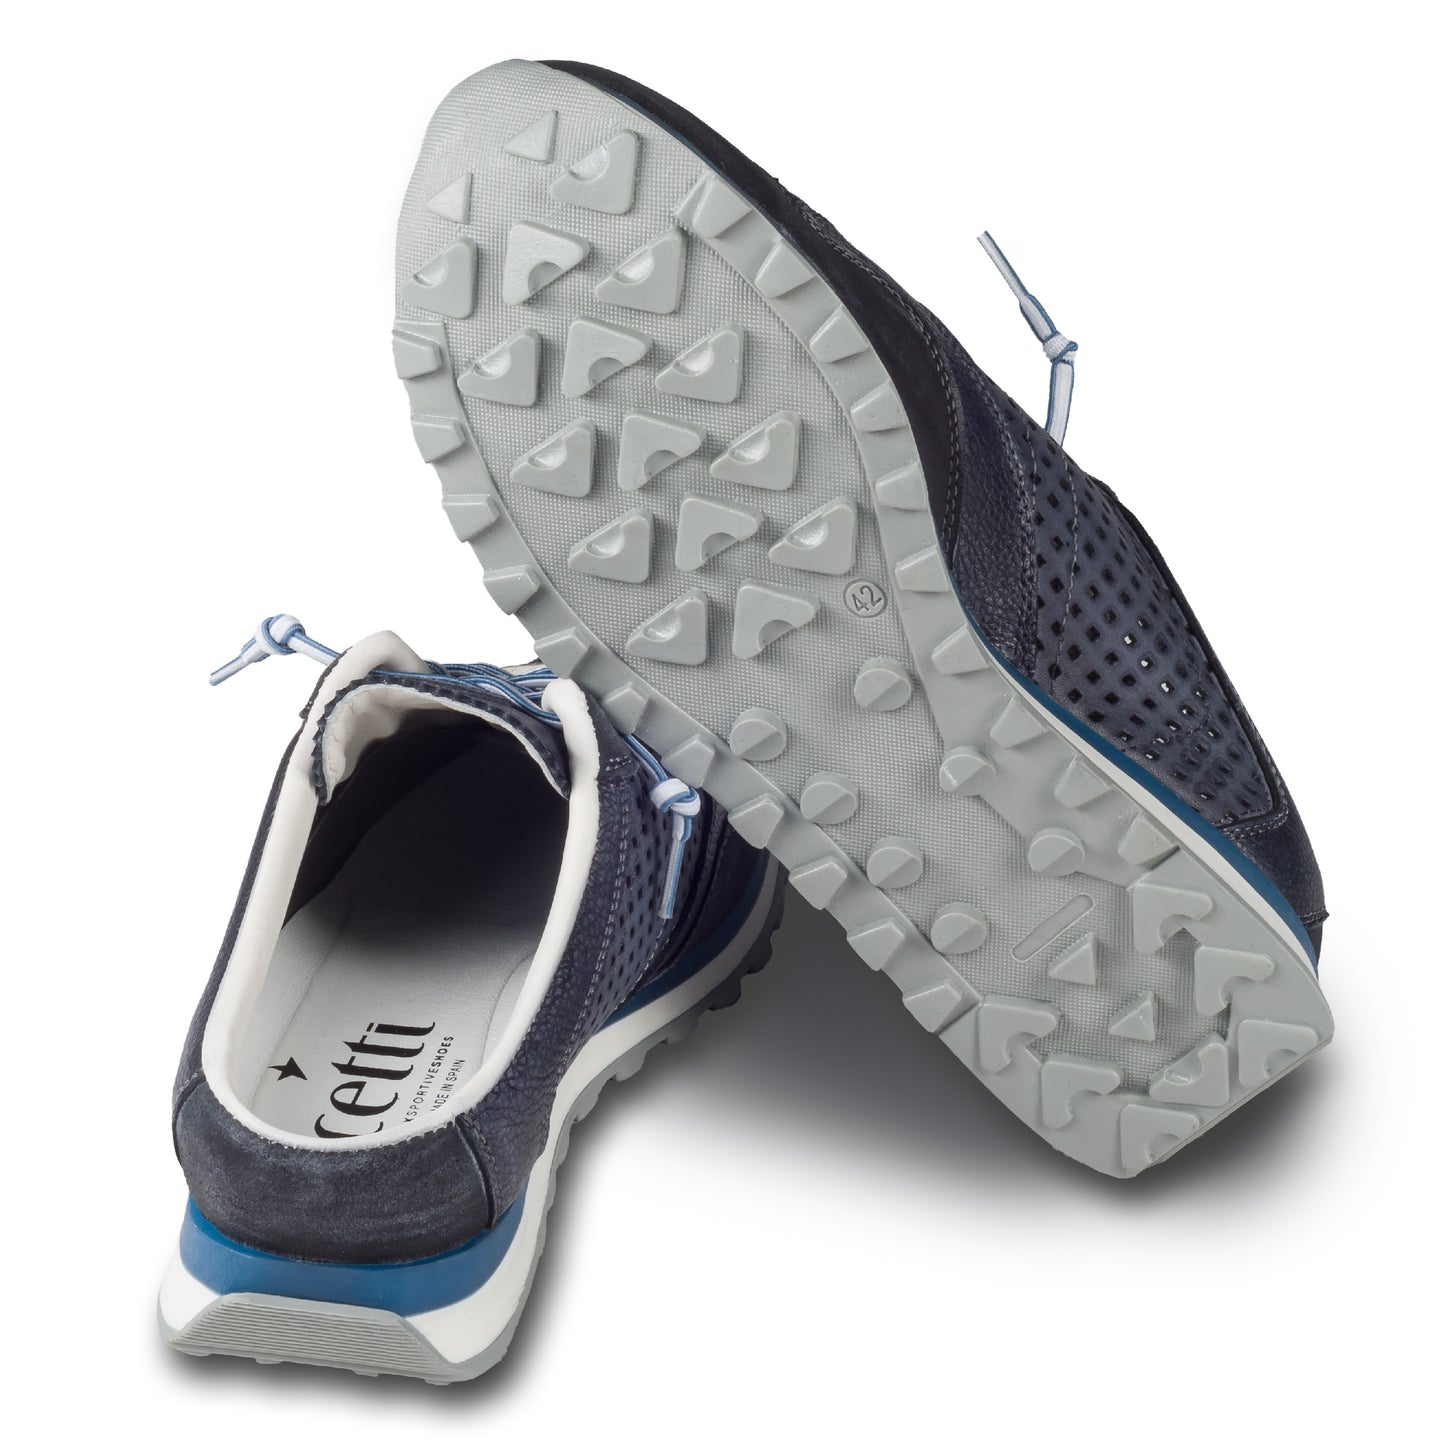 CETTI Herren Leder Sneaker-Mule, Modell „C848“ in dunkelblau / grau (used tin antracita), Made in Spain. Ansicht der Ferse und Sohlenunterseite. Ansicht der Ferse und Sohlenunterseite. 